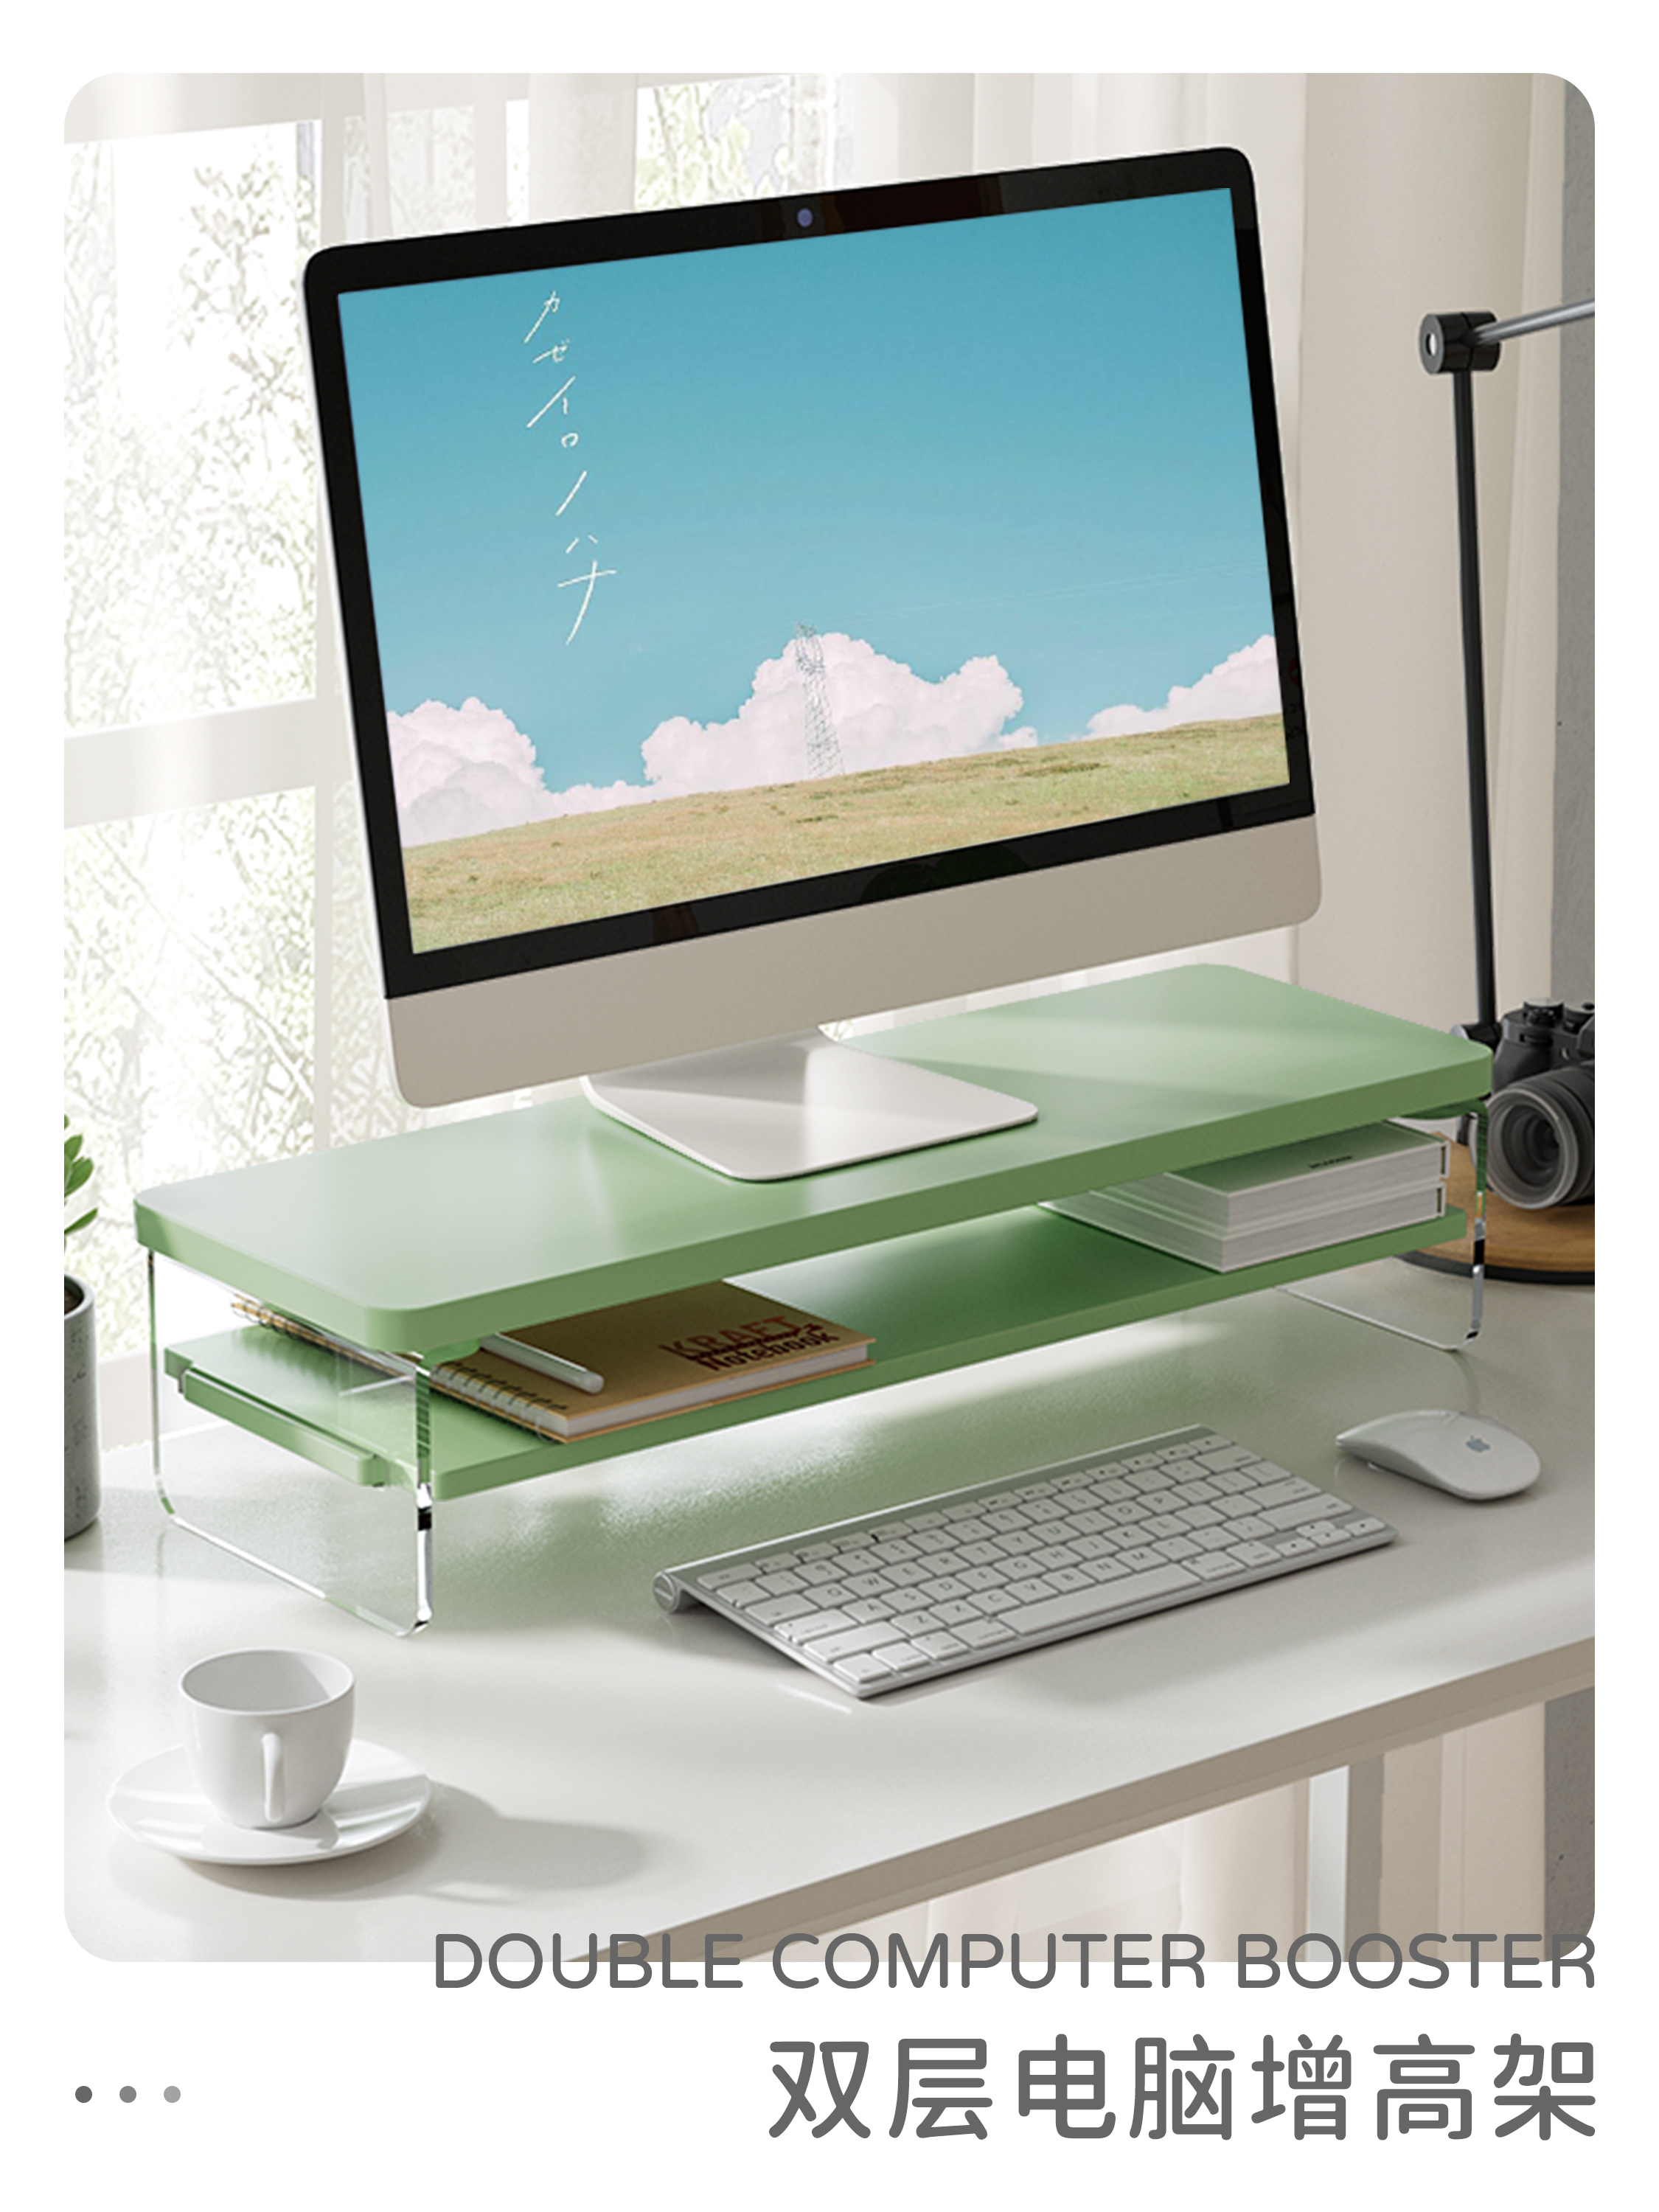 雙層懸浮感桌面增高架 提升電腦顯示器高度改善視覺舒適度辦公桌鍵盤滑鼠收納空間